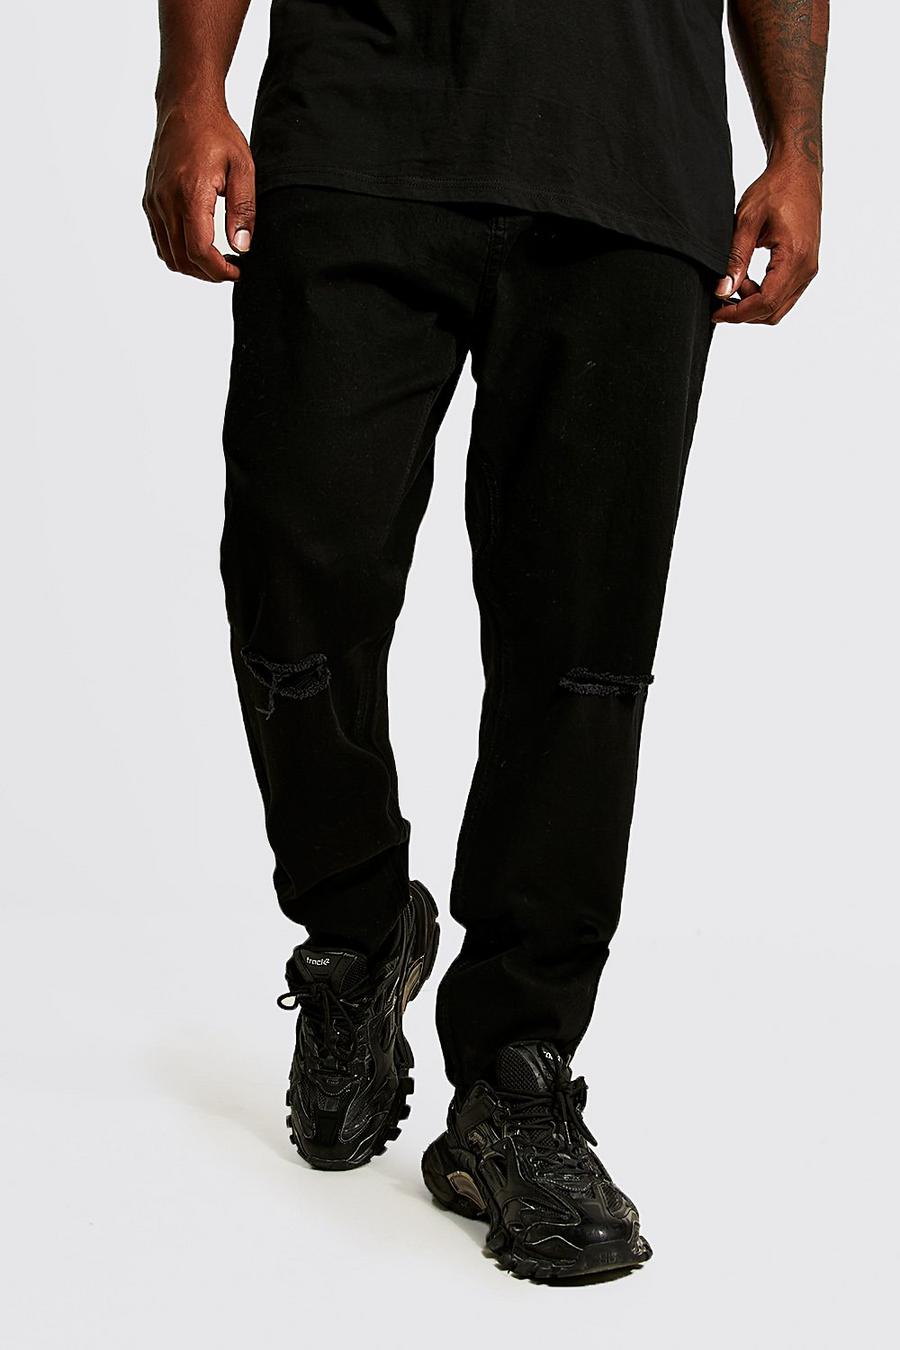 שחור אמיתי ג'ינס סקיני עם שסע בברך, מידות גדולות